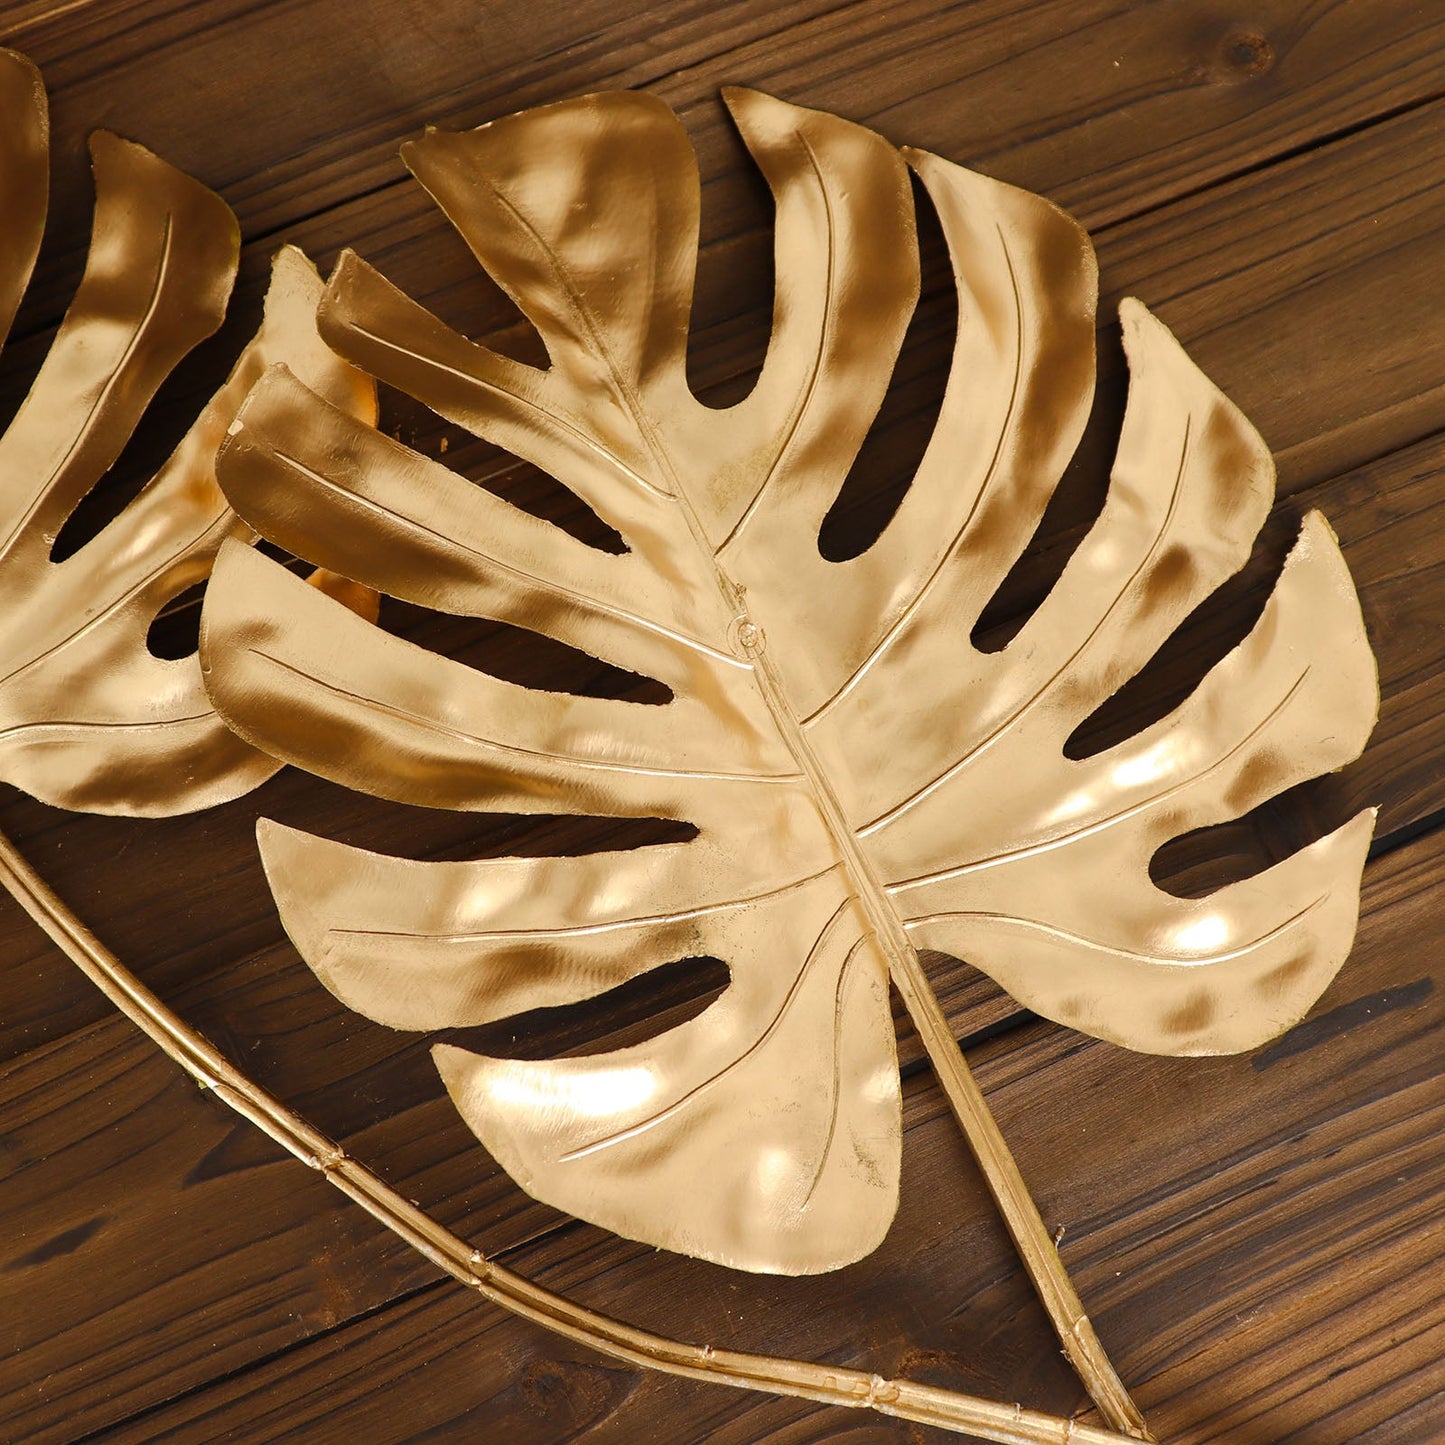 3 Pack Shiny Golden Artificial Tropical Plant Palm Leaf Stems, Faux Monstera Leaves, Floral Arrangements Table Centerpiece Decor 29"